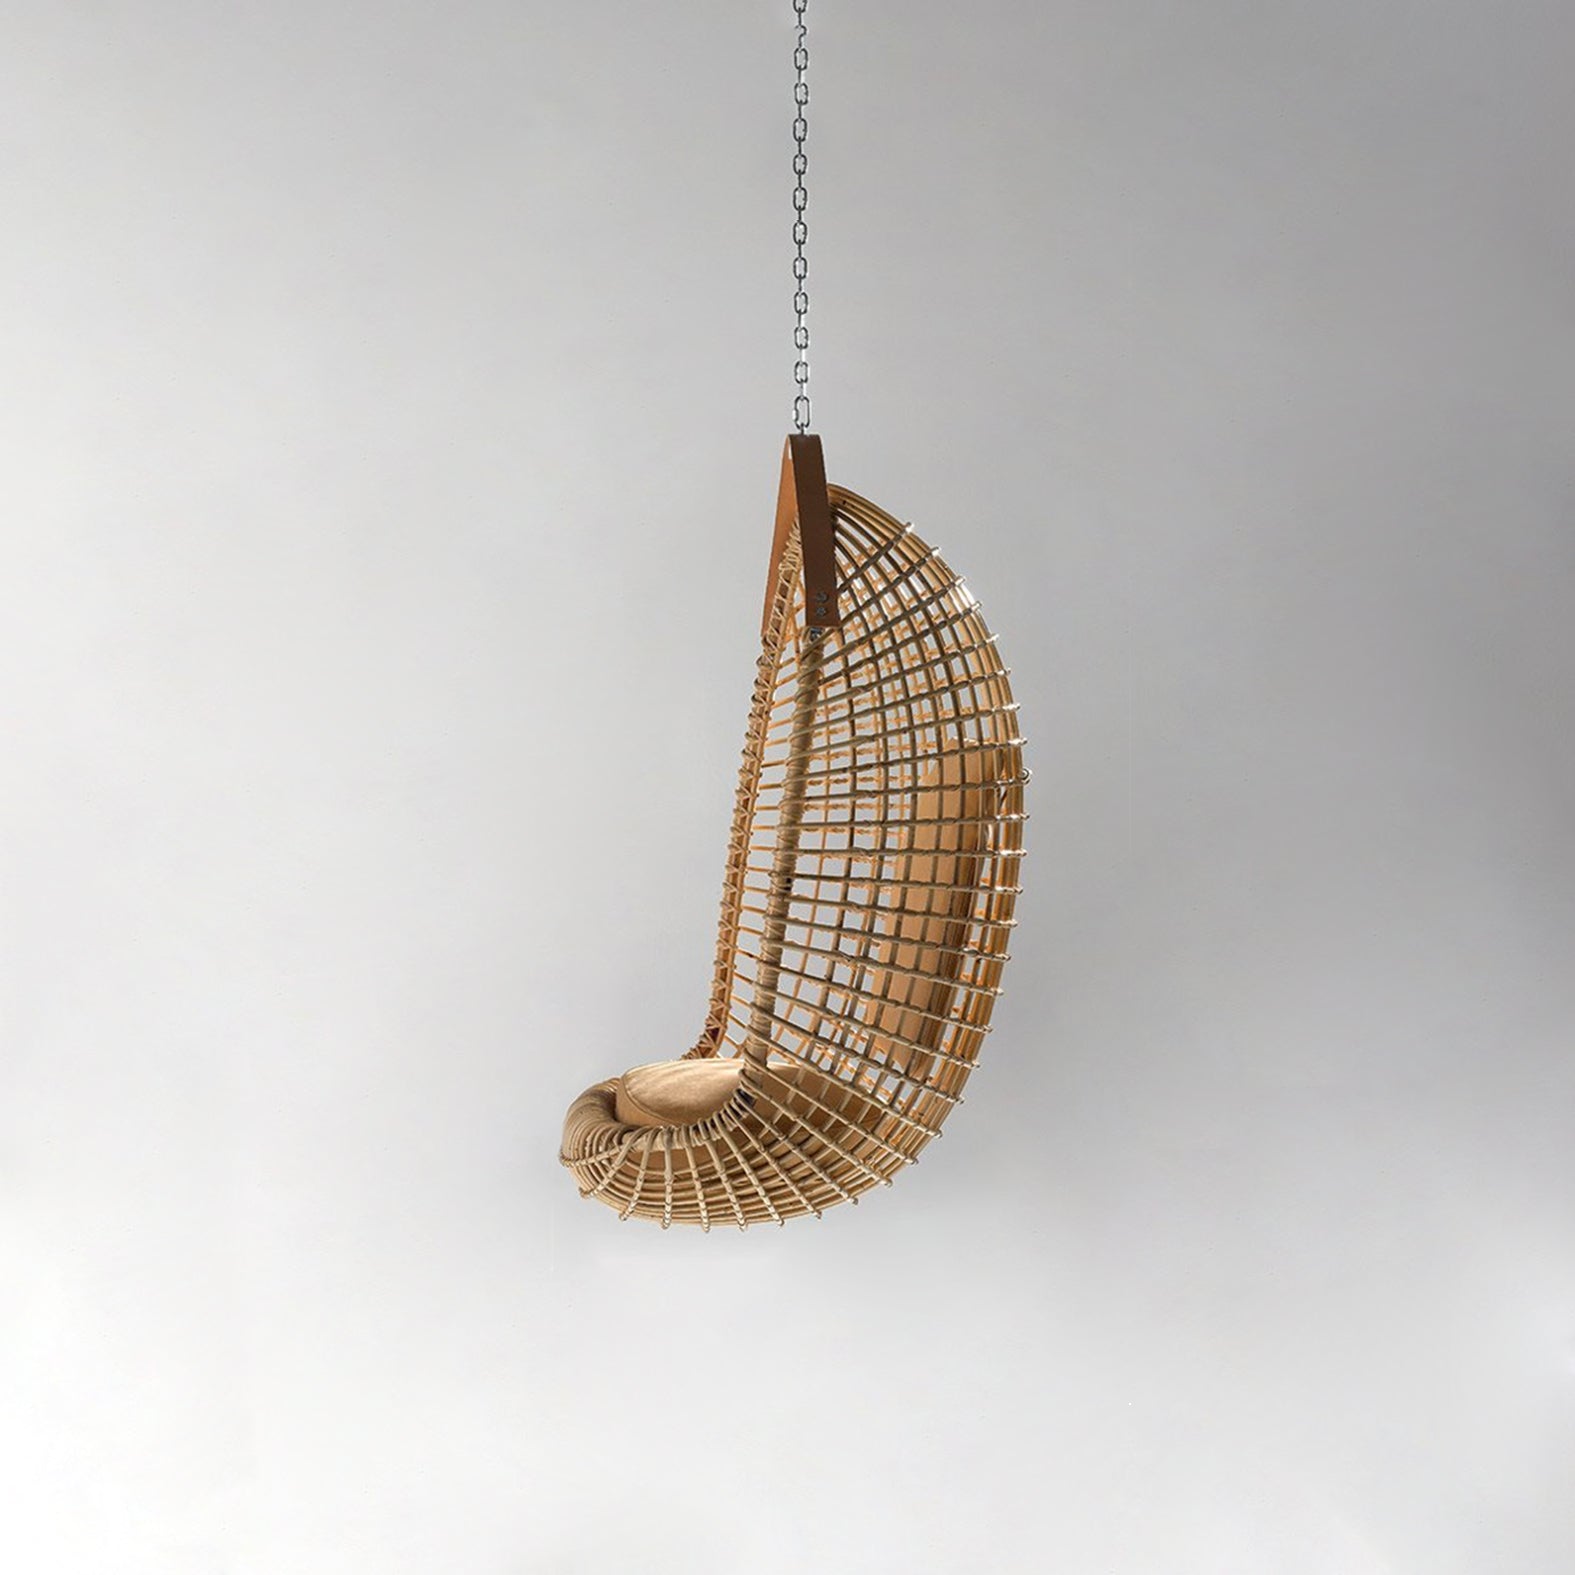 Eureka Hanging Chair